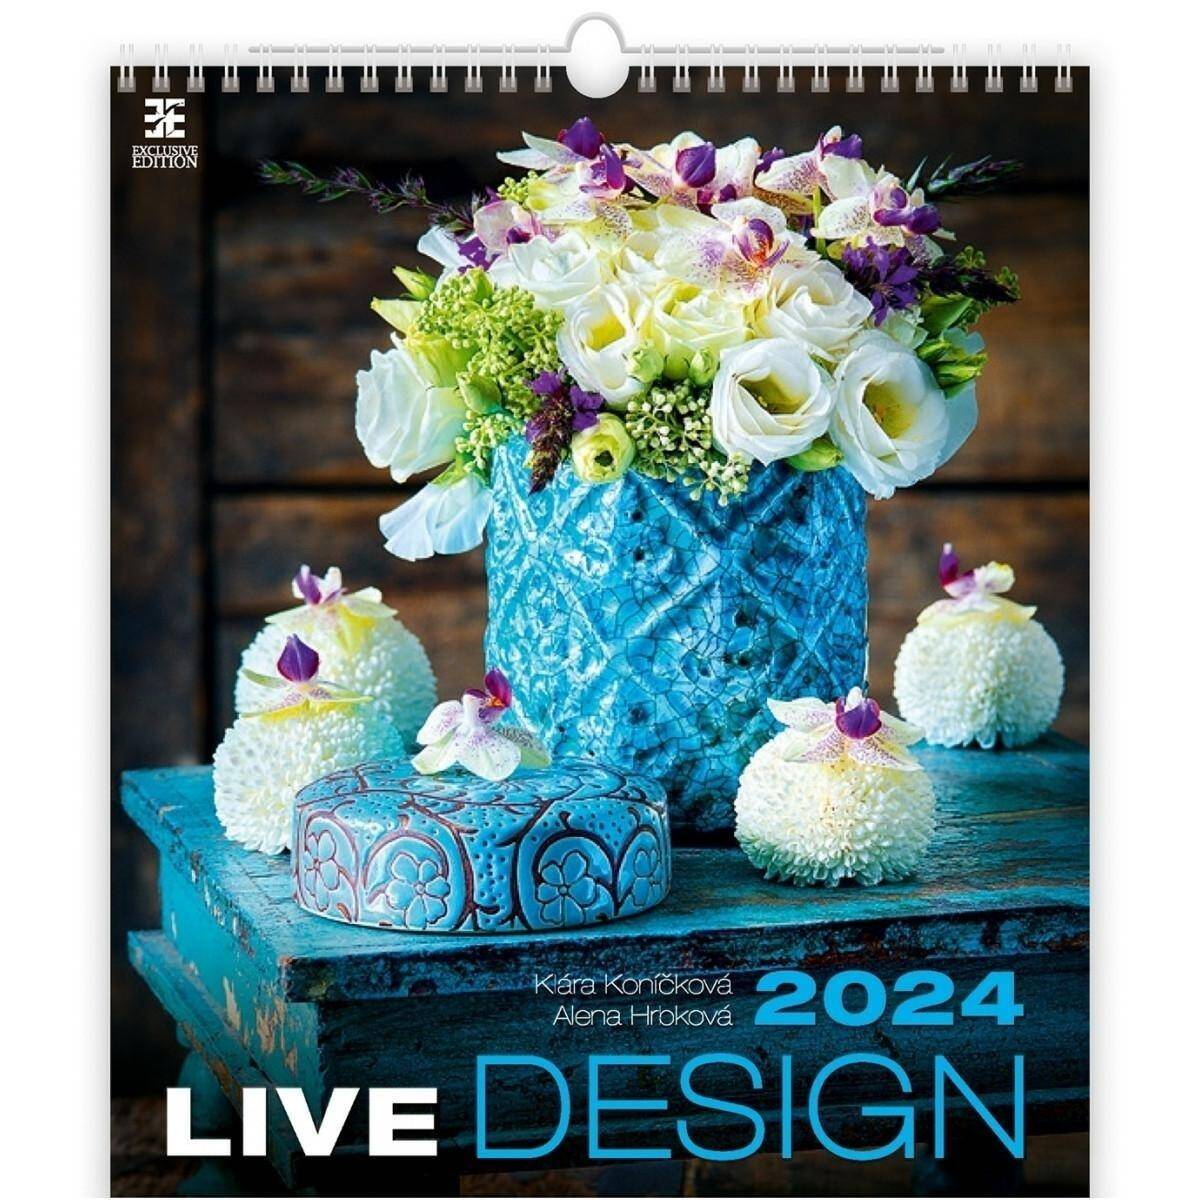 Kalendarz 2024 Live Design ekskluzywny ścienny